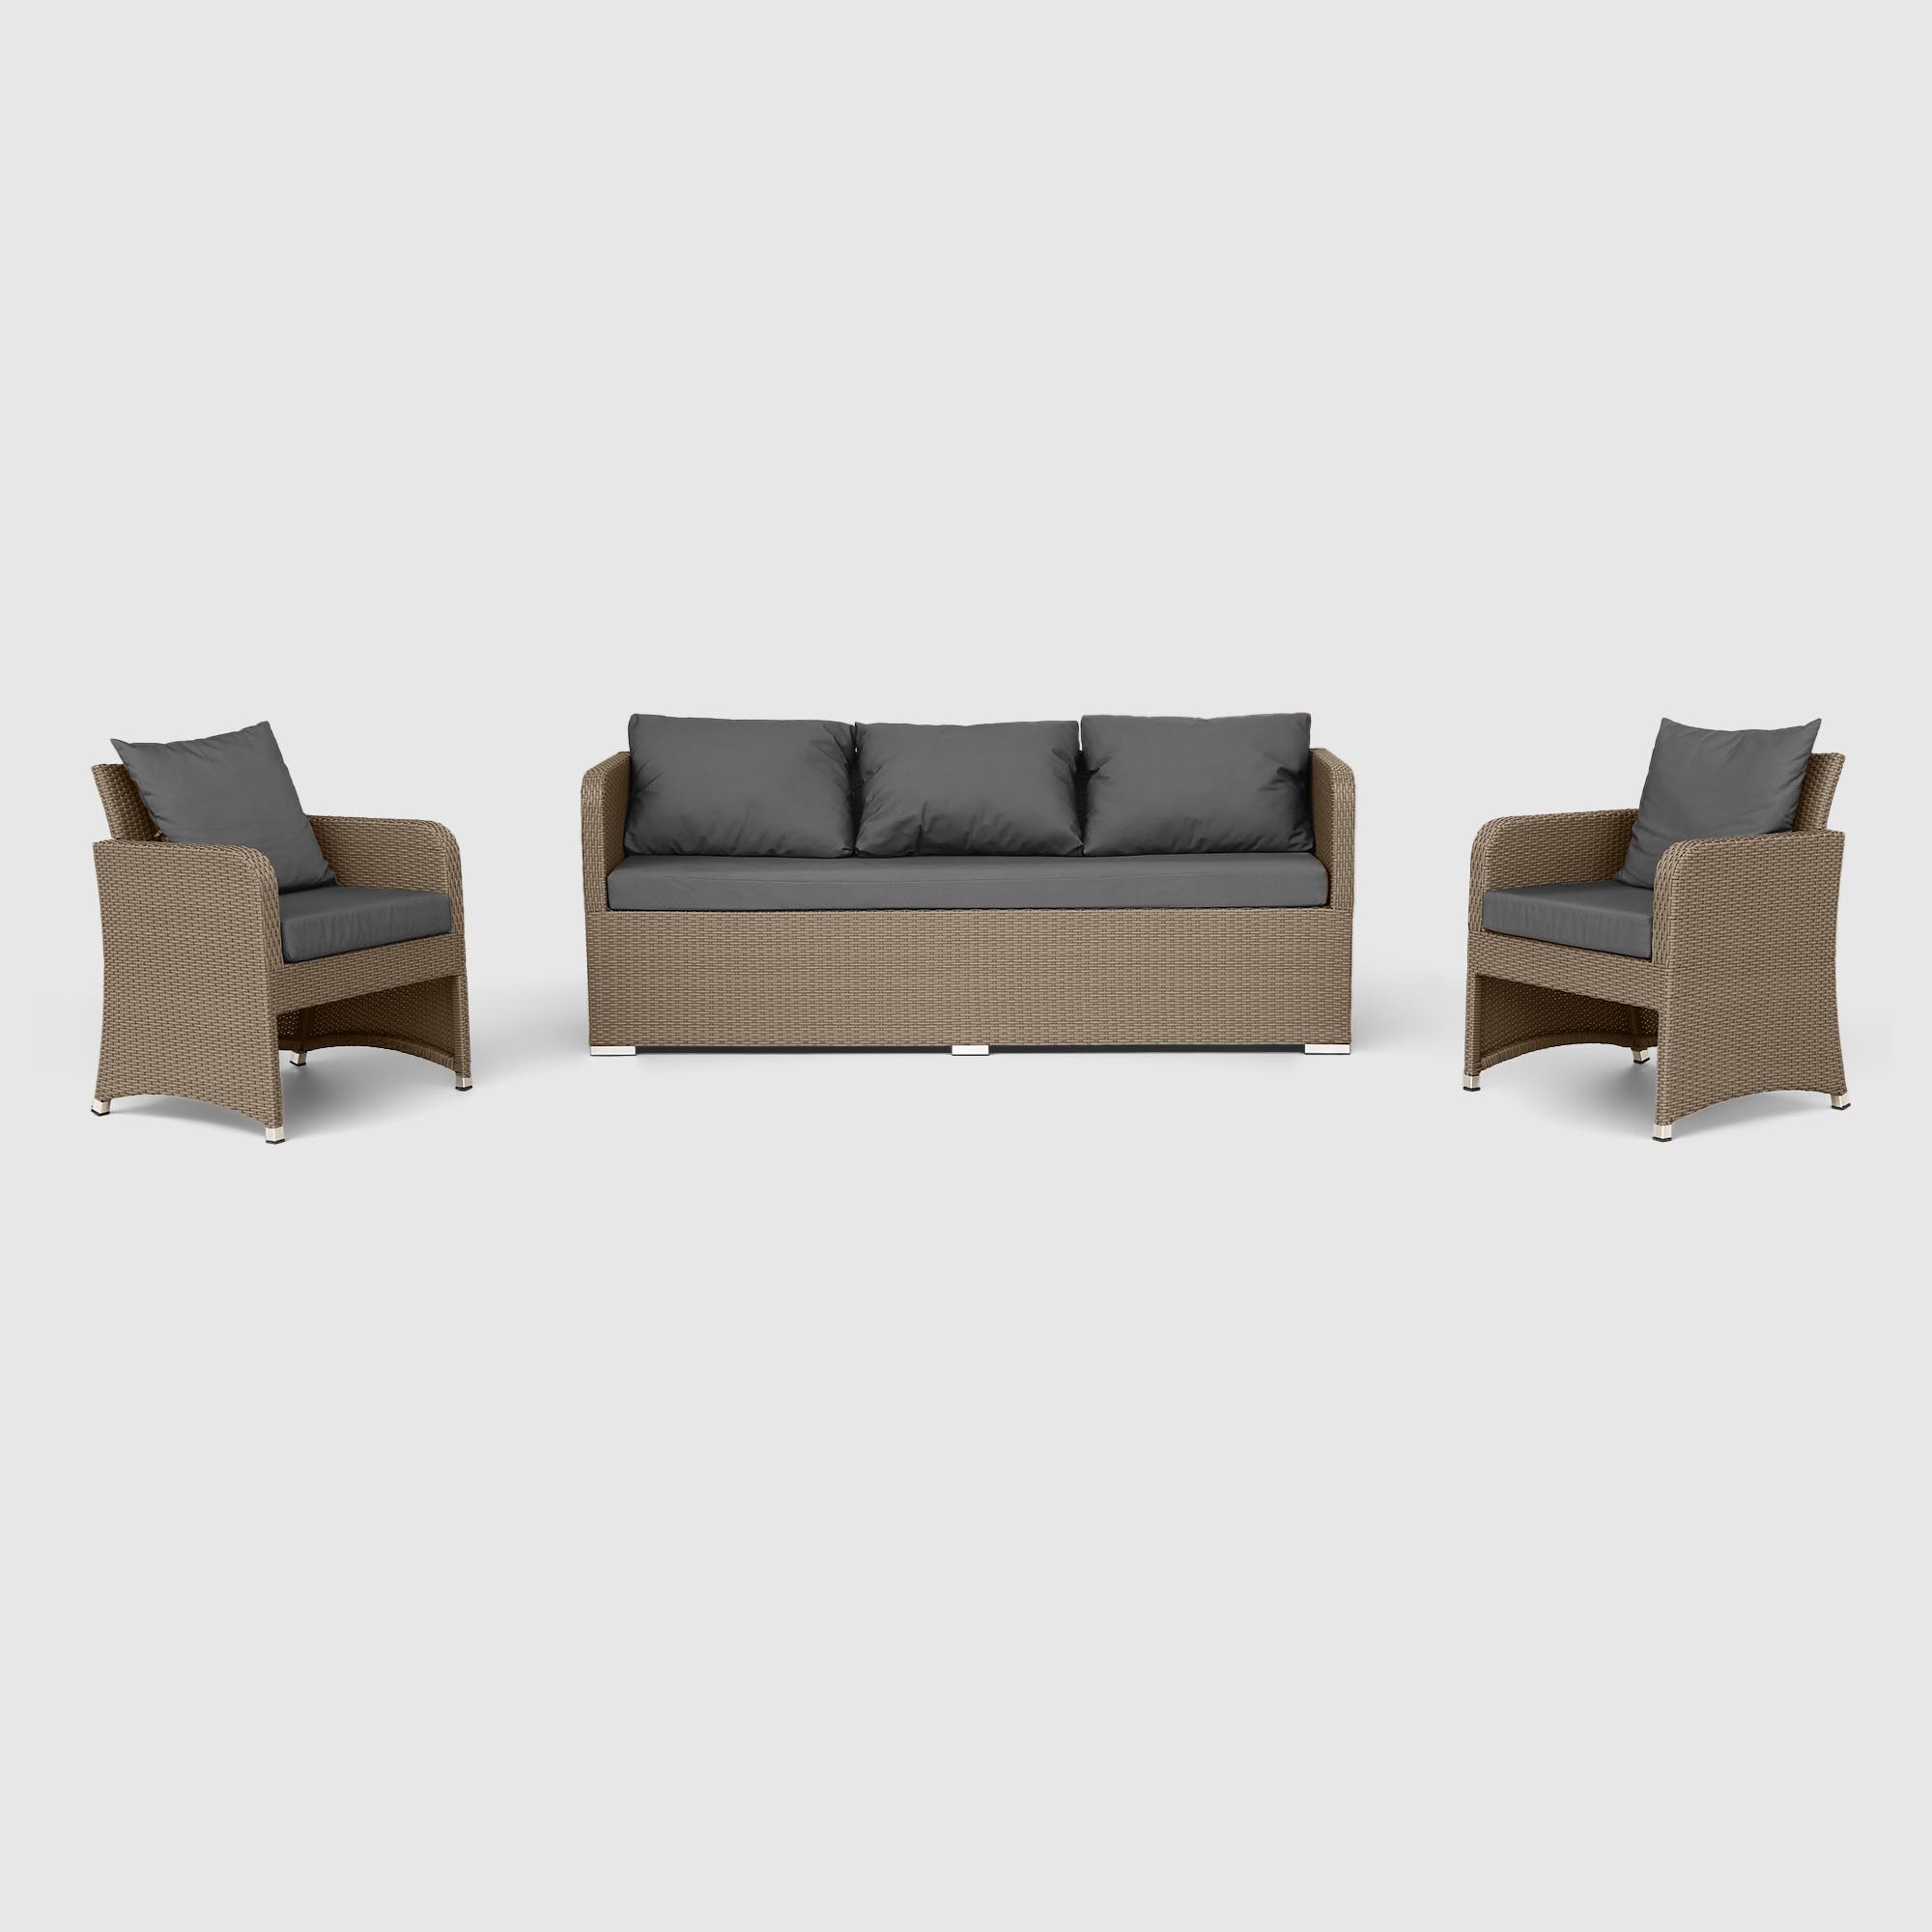 Комплект мебели NS Rattan LWS 21 коричневый с серым 3 предмета, цвет светло-коричневый, размер 220х75х75